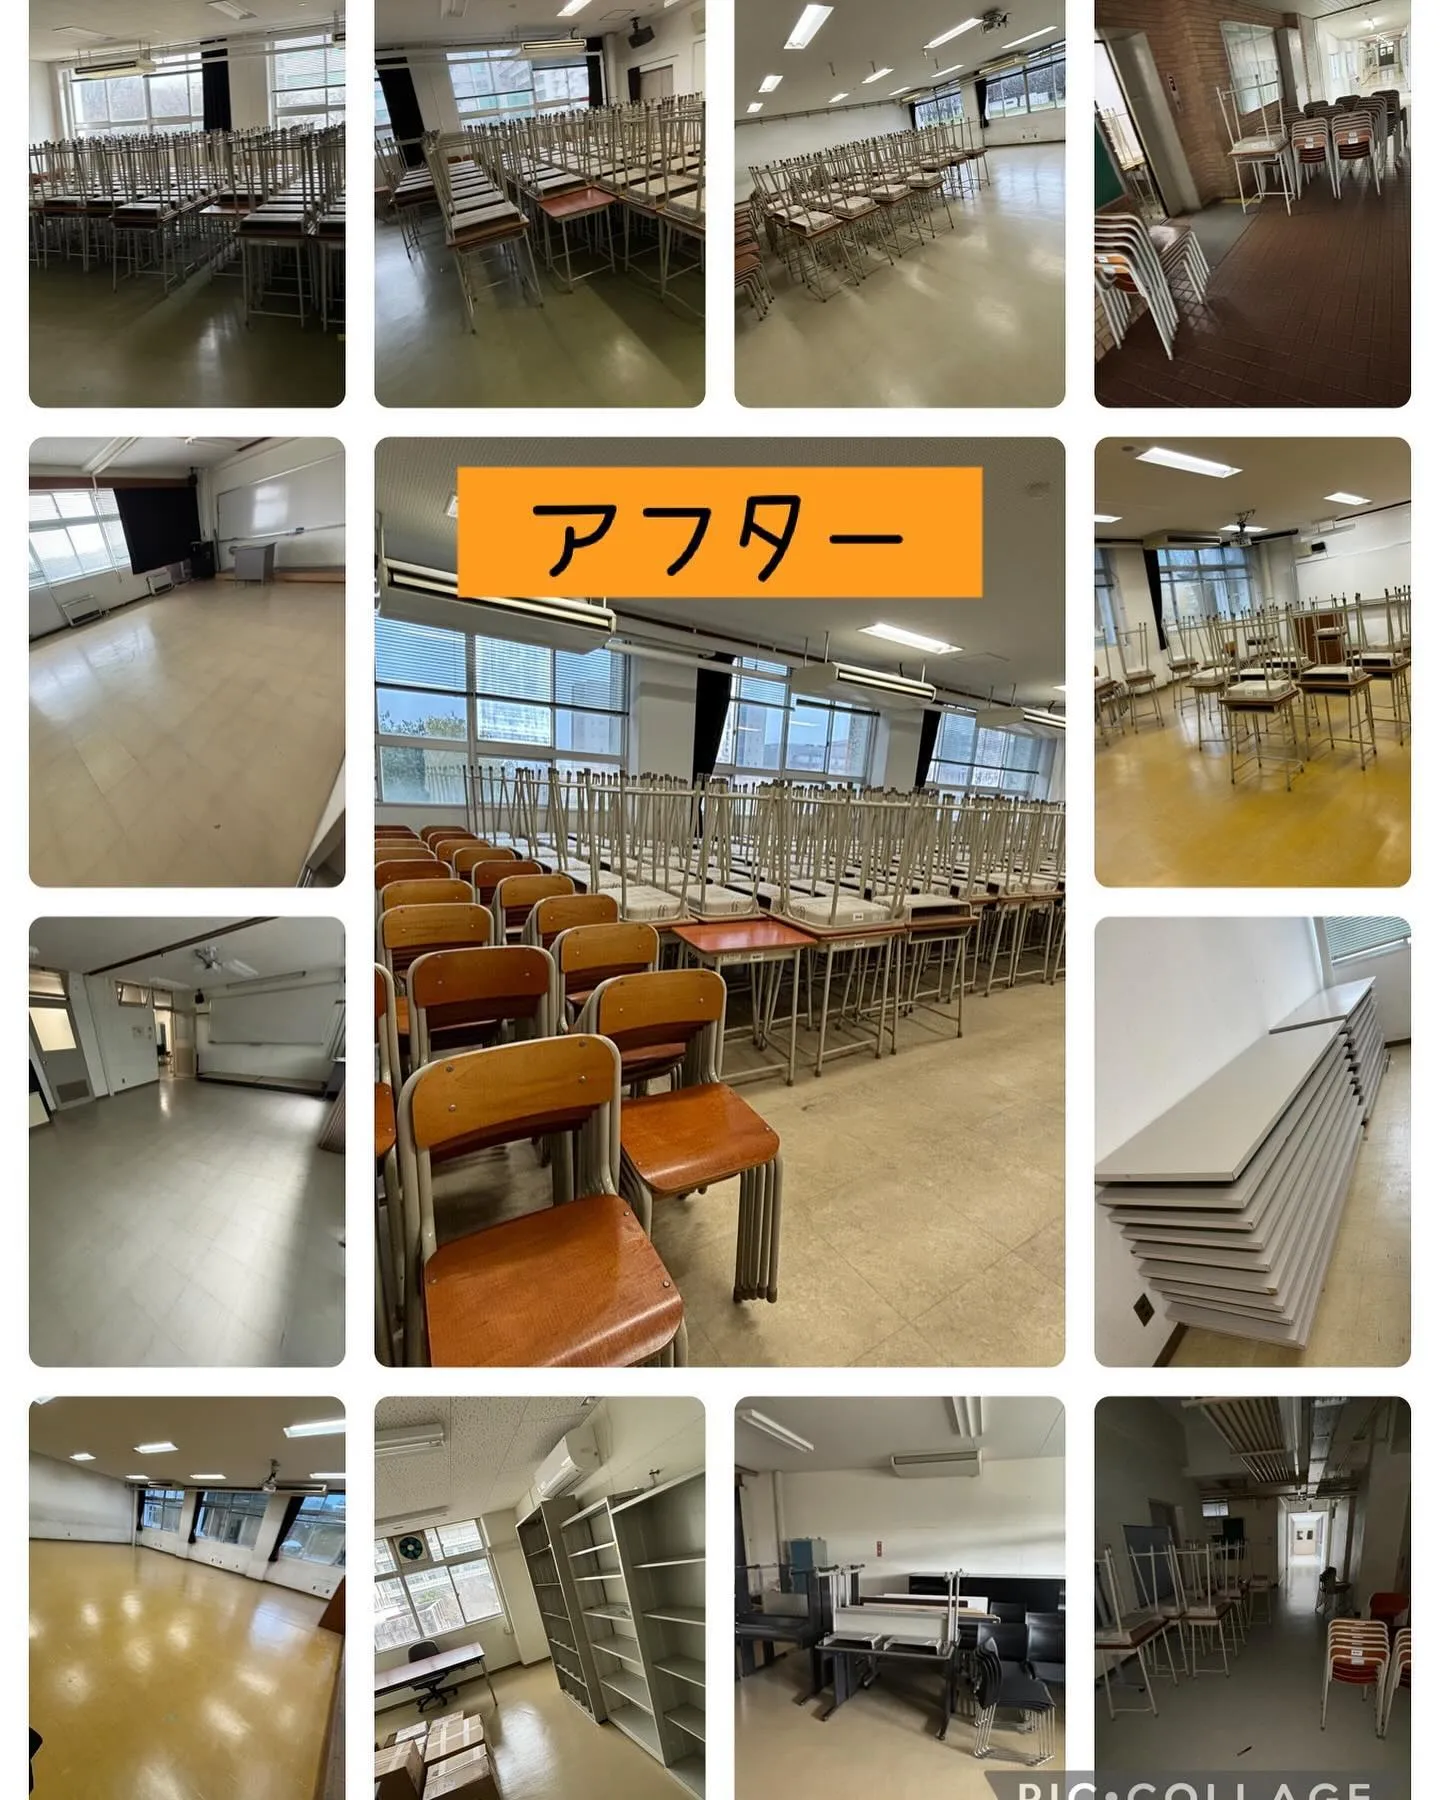 今日は岐阜市の某大学で机椅子の家具移動をして来ました。